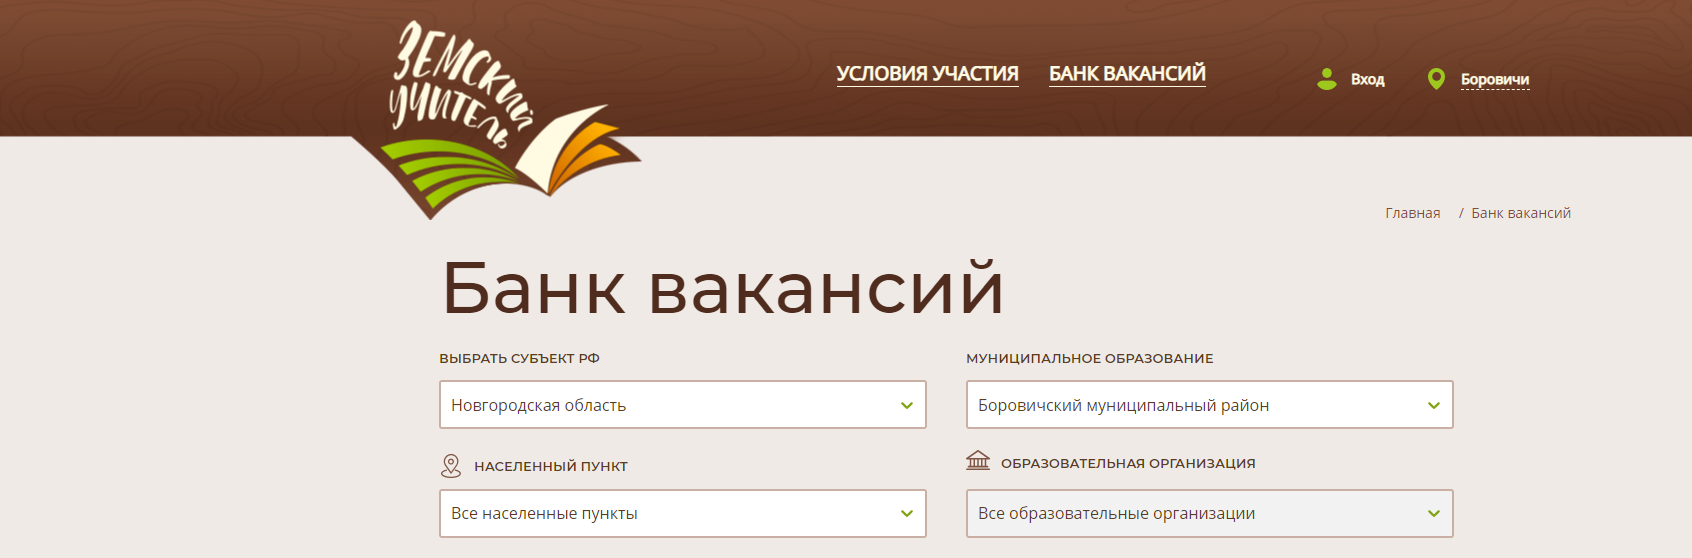 Школа минпросвещения россии личный кабинет. Приложения для юристов. Как создать заявку на сайте Земский учитель.